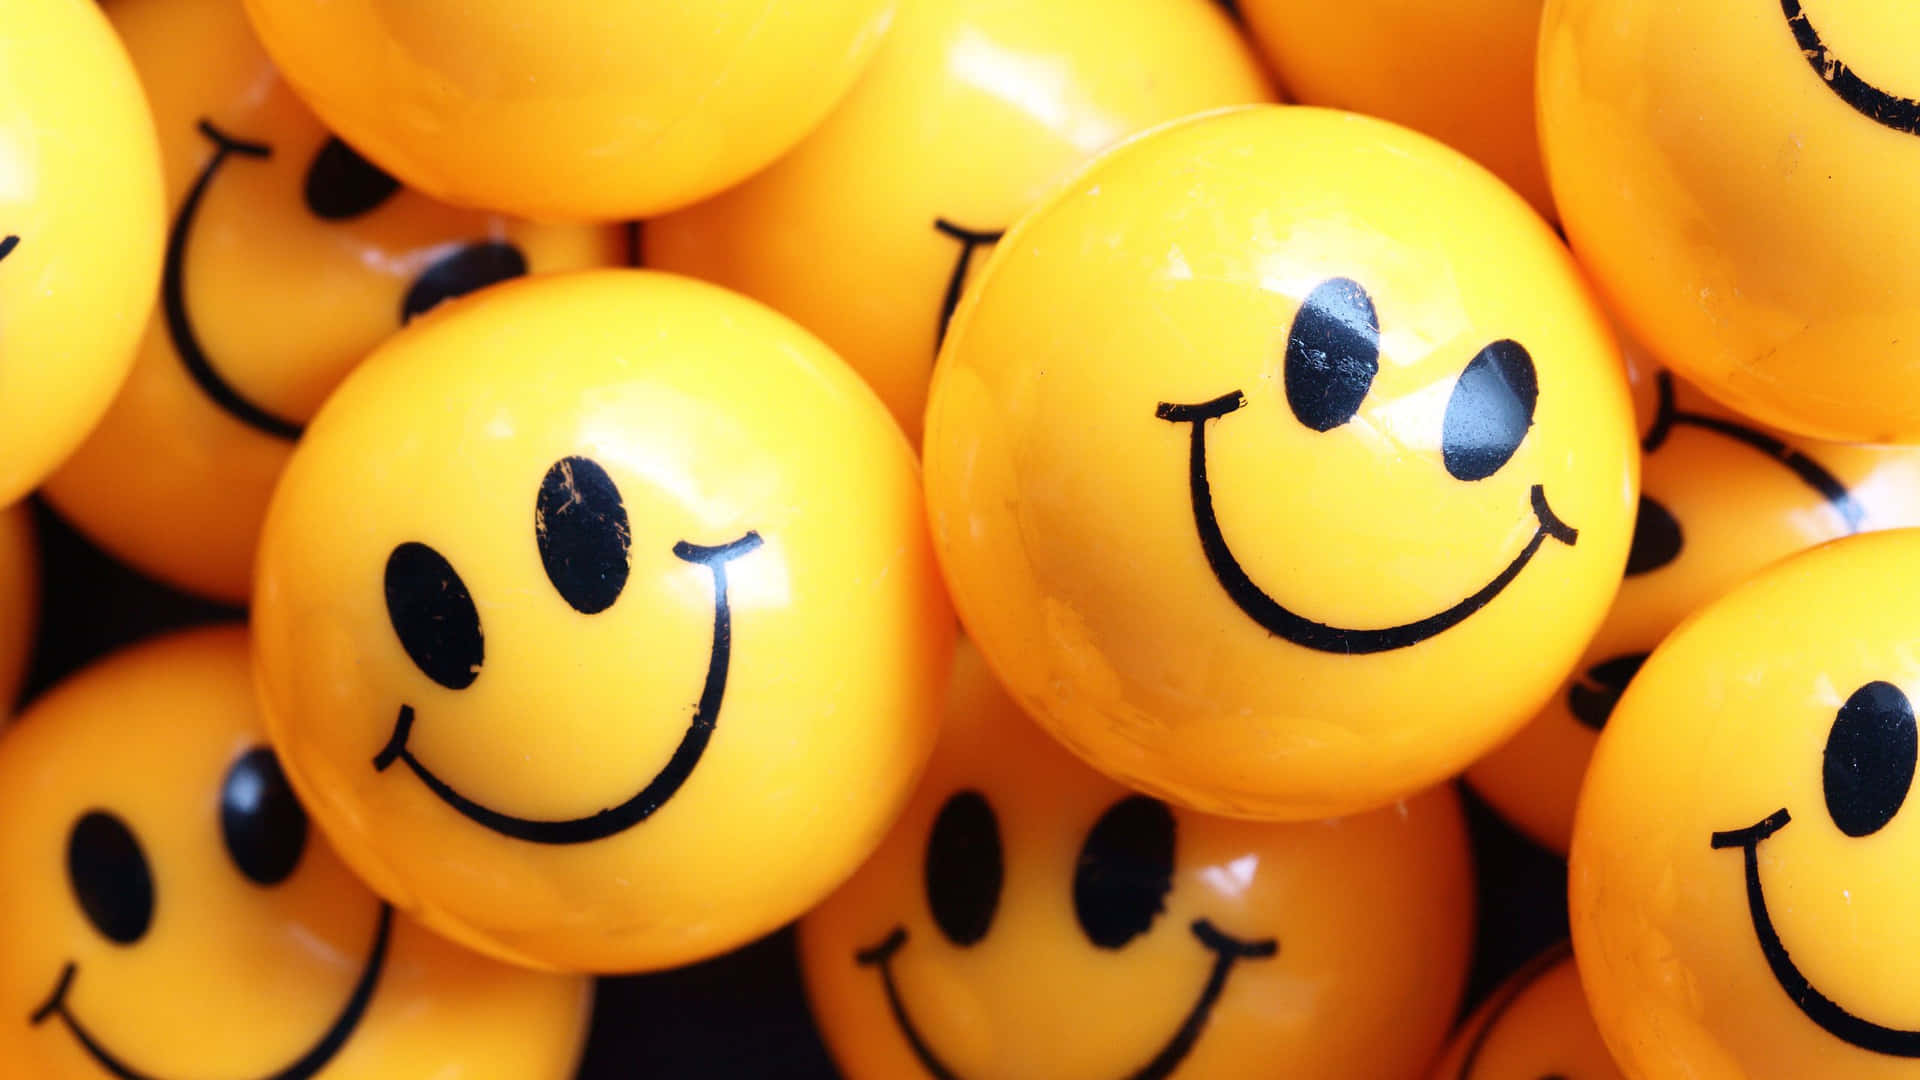 Cute Smile Emoji Balls Wallpaper